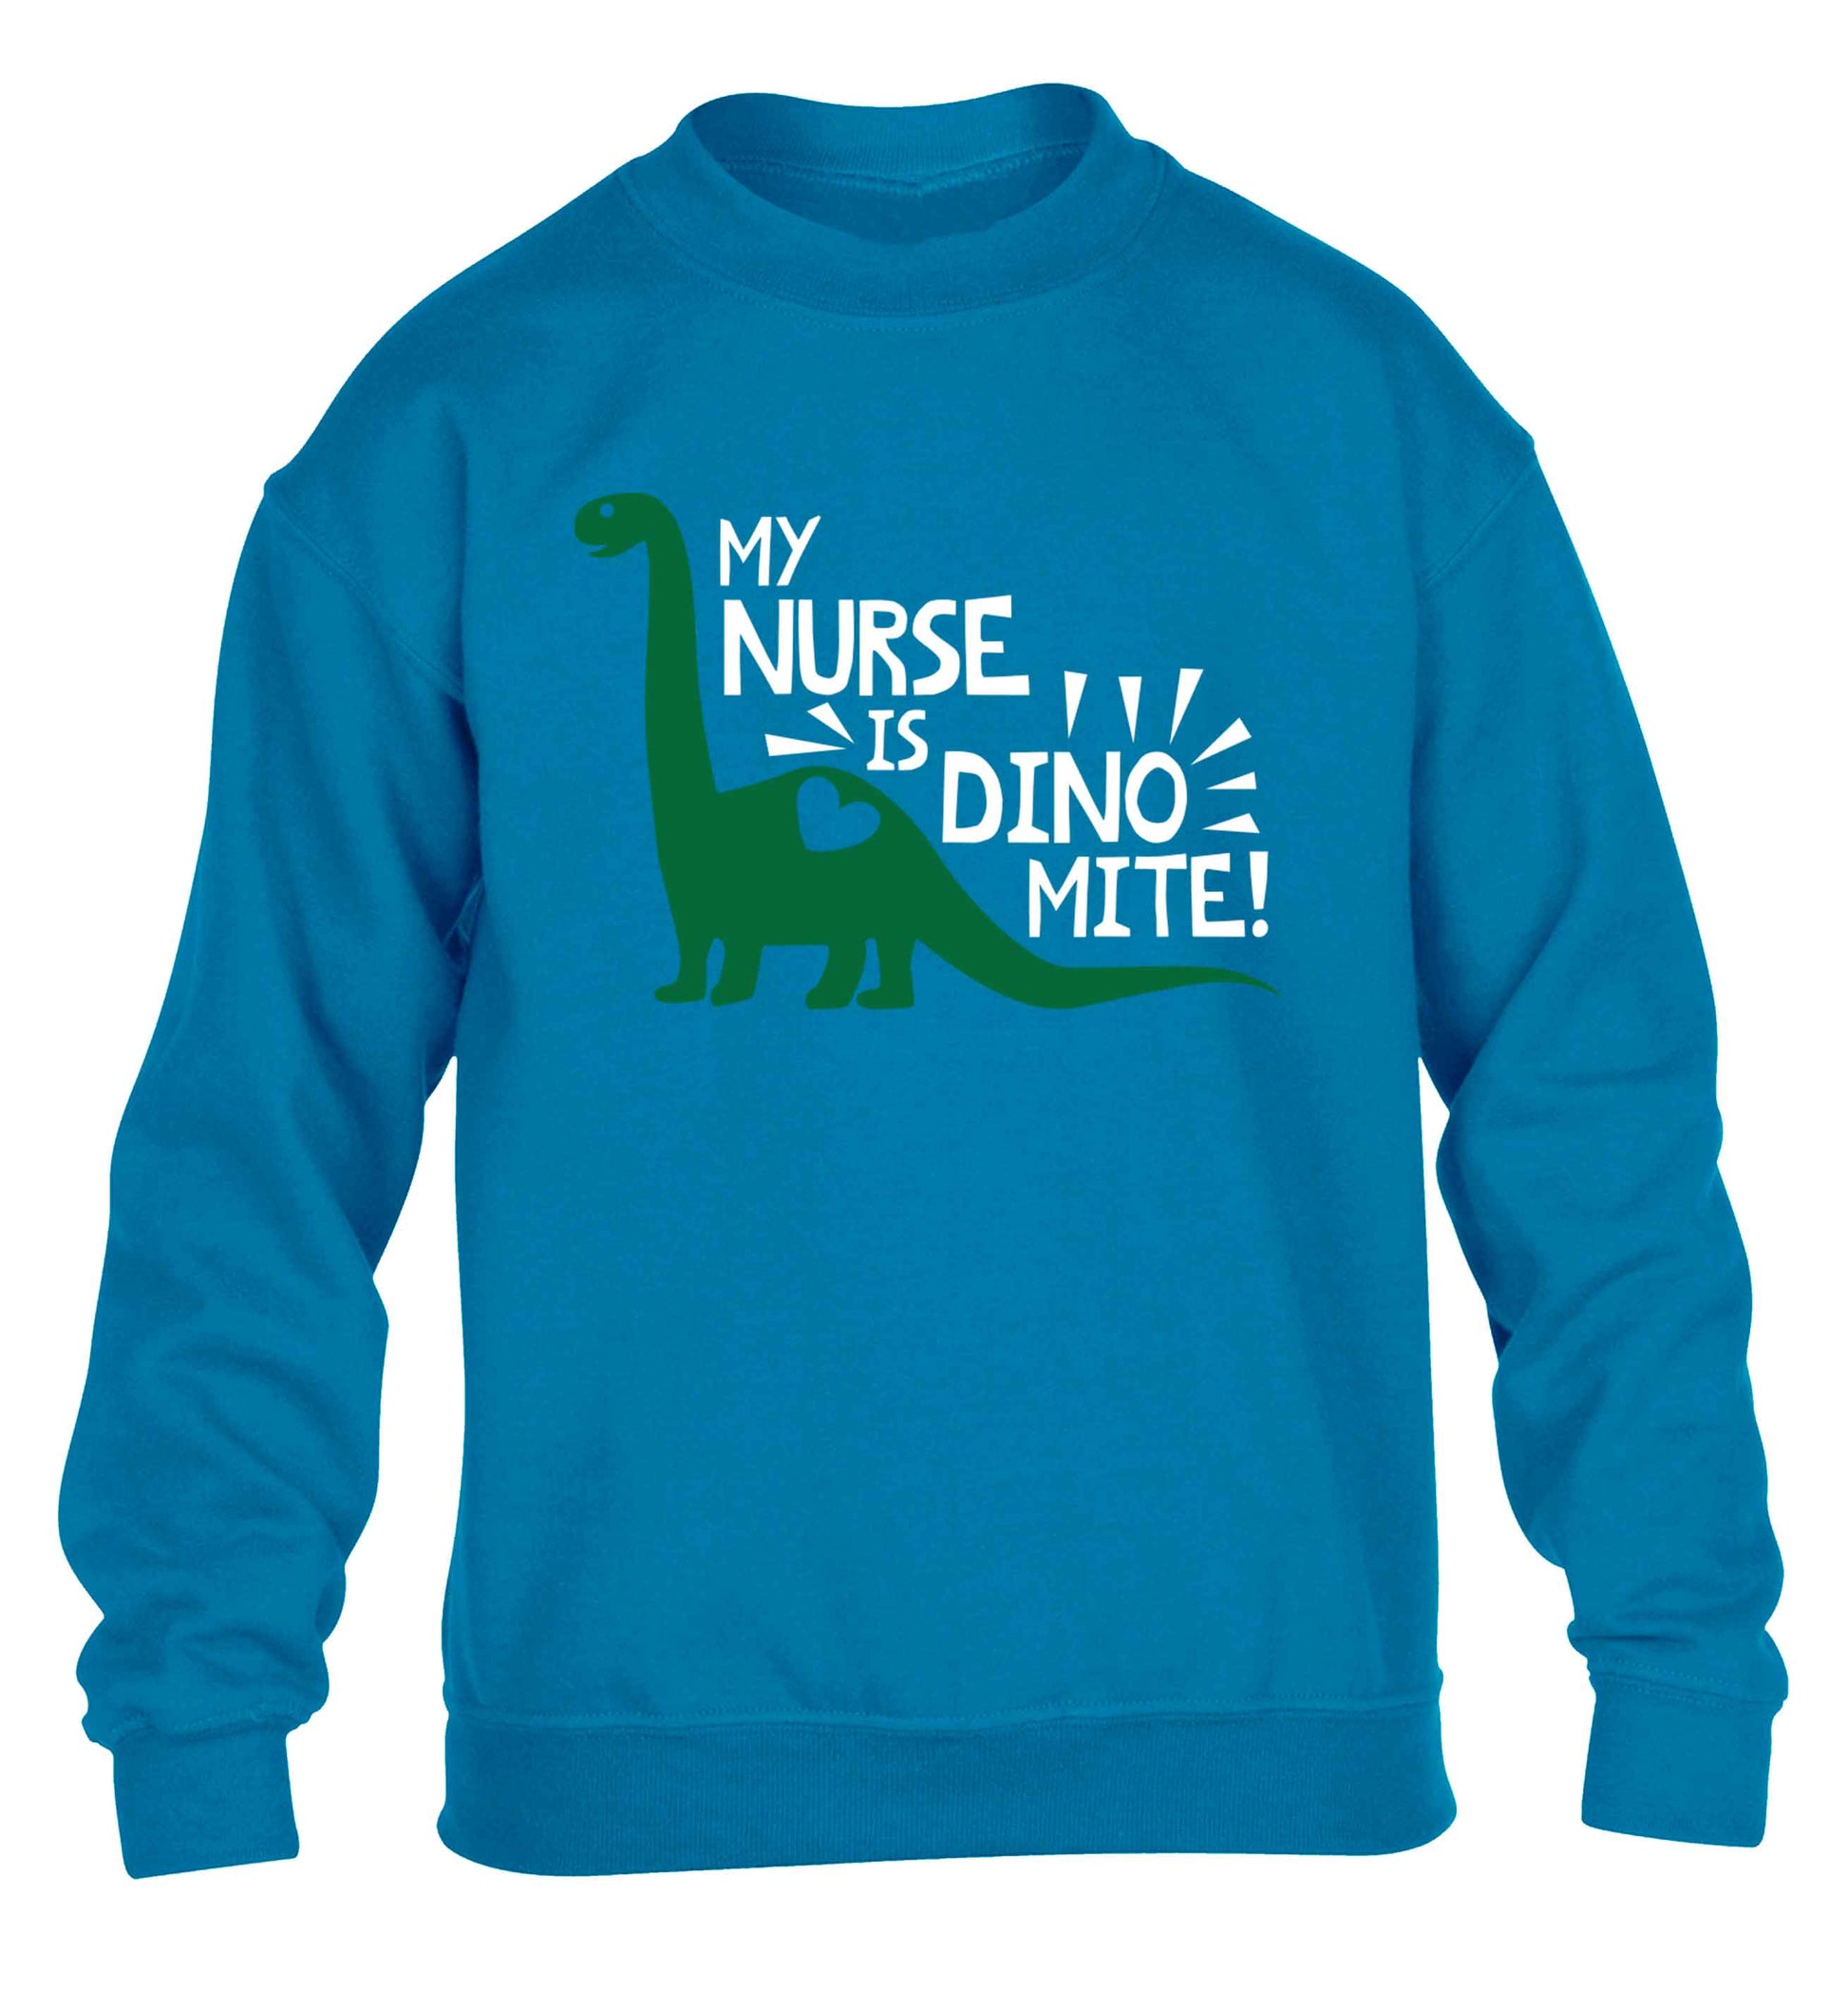 My nurse is dinomite! children's blue sweater 12-13 Years